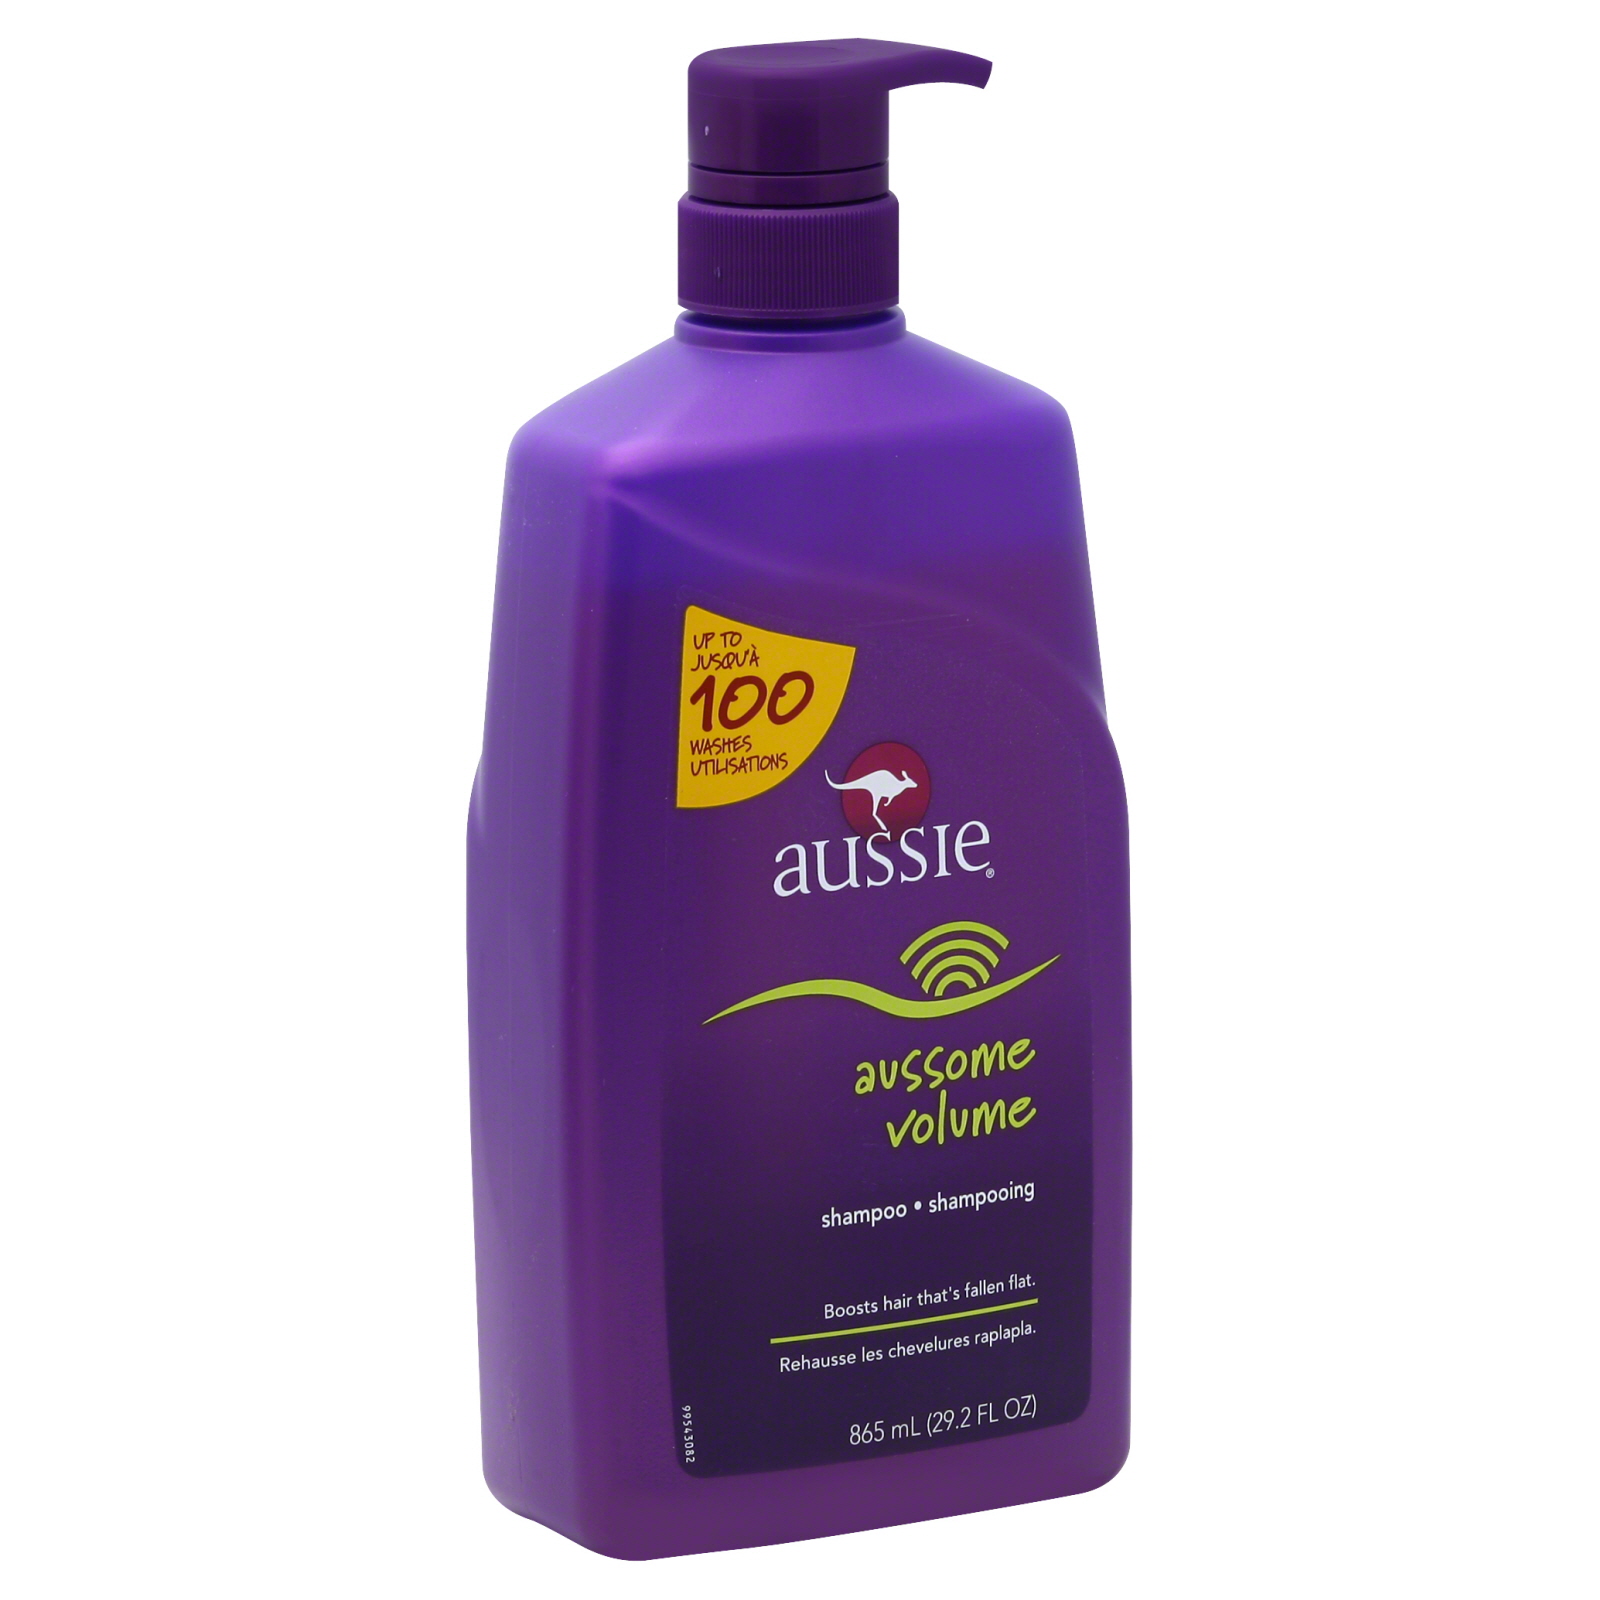 Aussie Aussome Volume, Shampoo, 29.2 oz